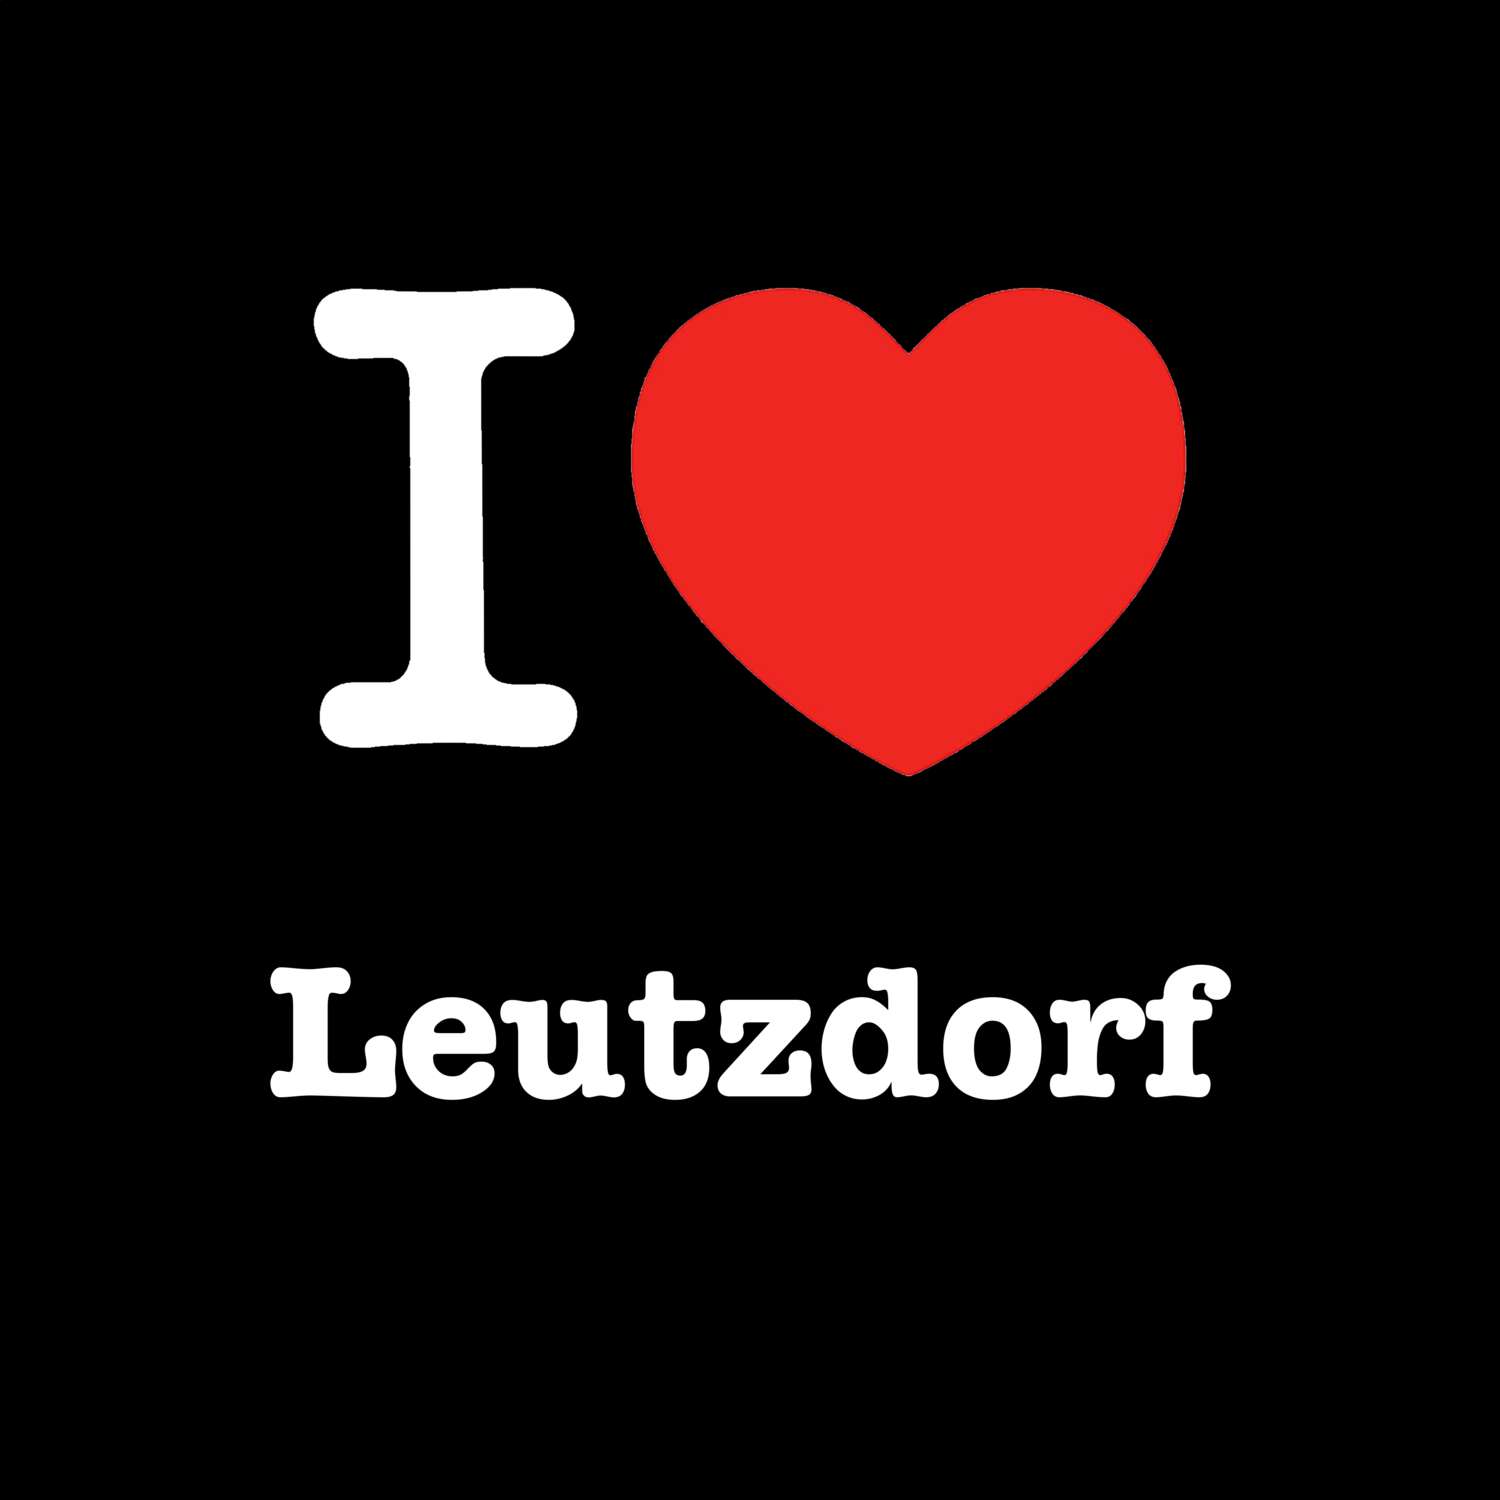 Leutzdorf T-Shirt »I love«